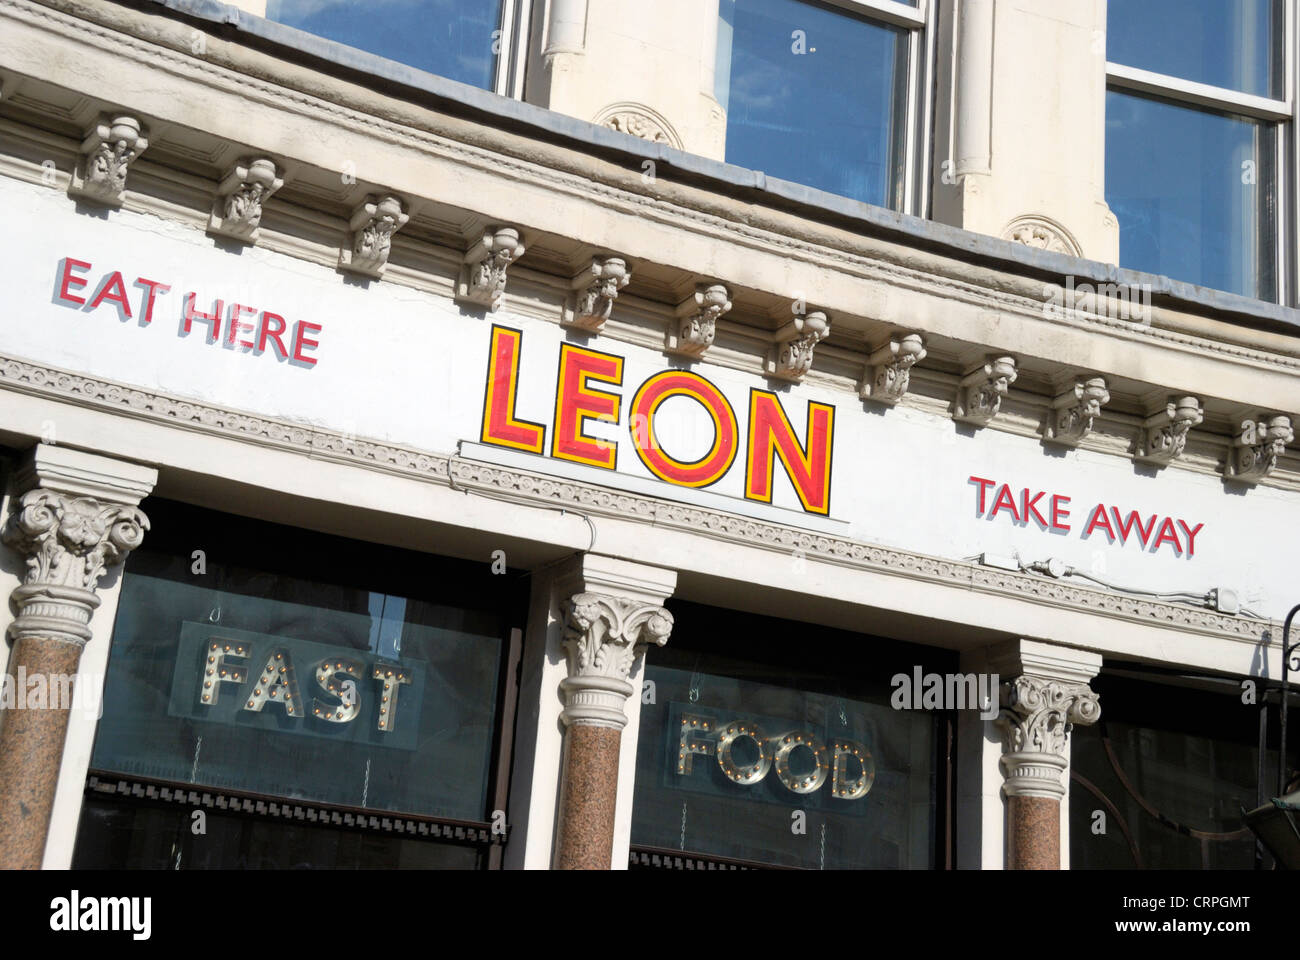 Leon Restaurant à Ludgate Circus, une chaîne de restauration rapide en mettant l'accent sur la qualité, la durabilité et la nutrition. Banque D'Images